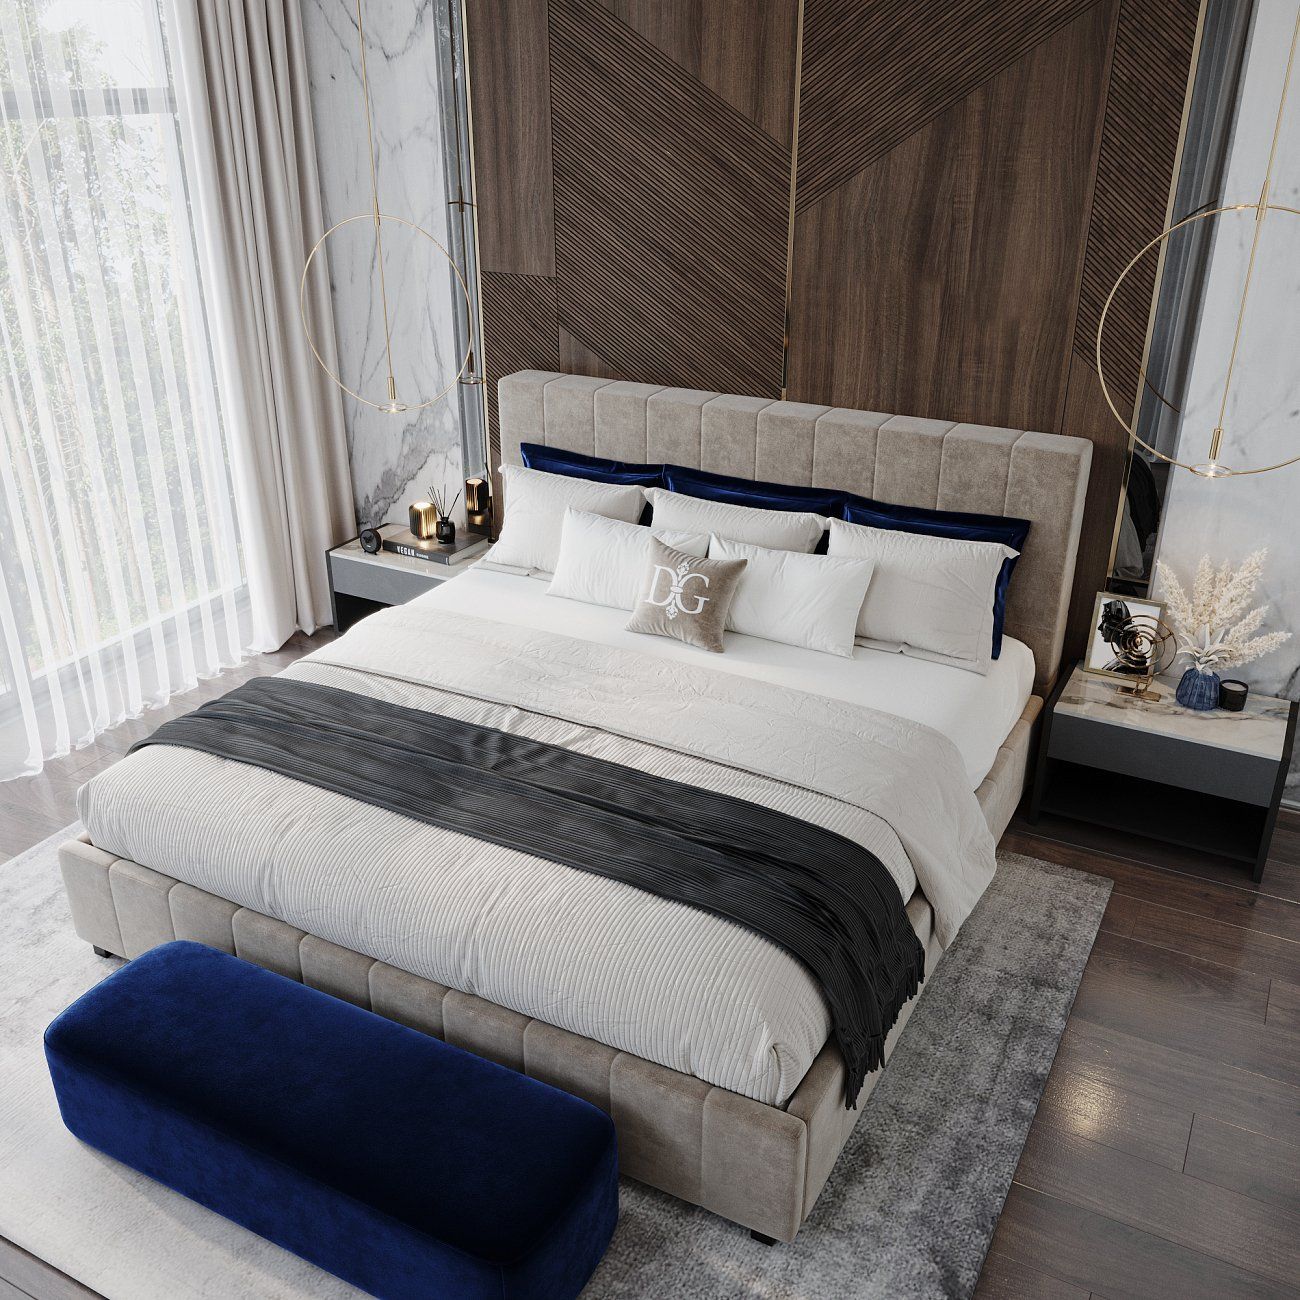 Деревянная кровать с высокой спинкой фото